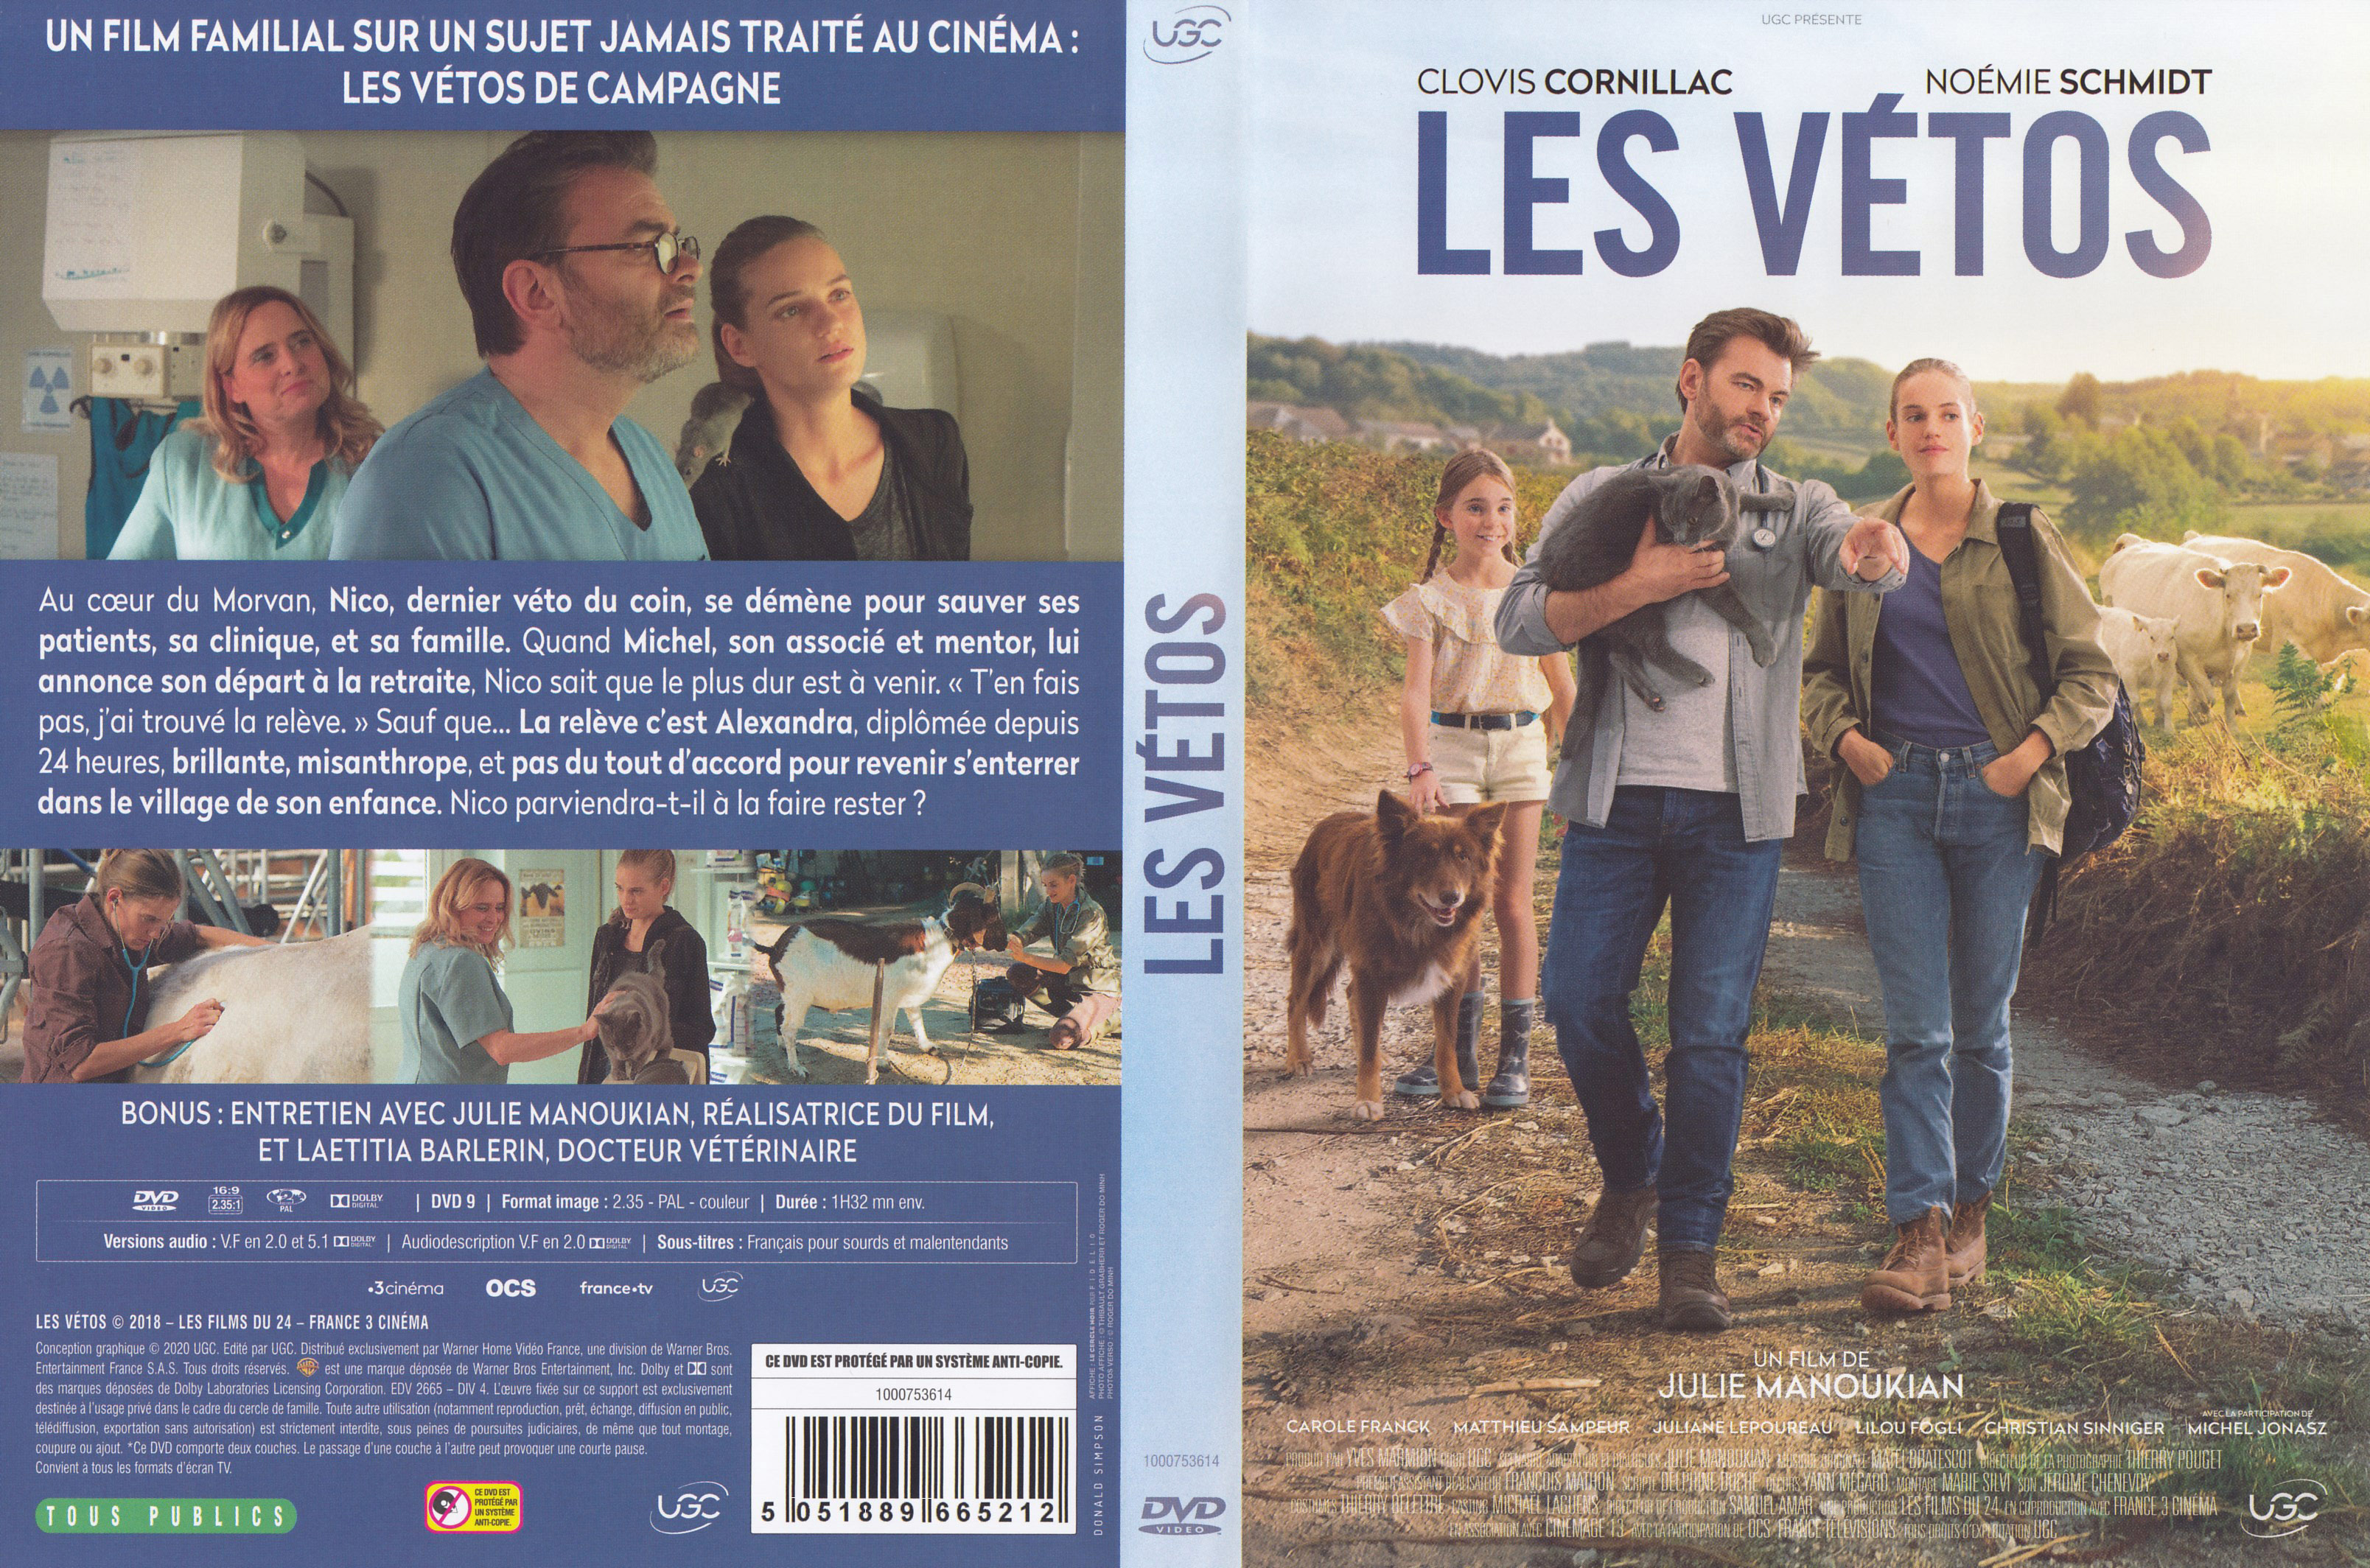 Jaquette DVD Les vetos